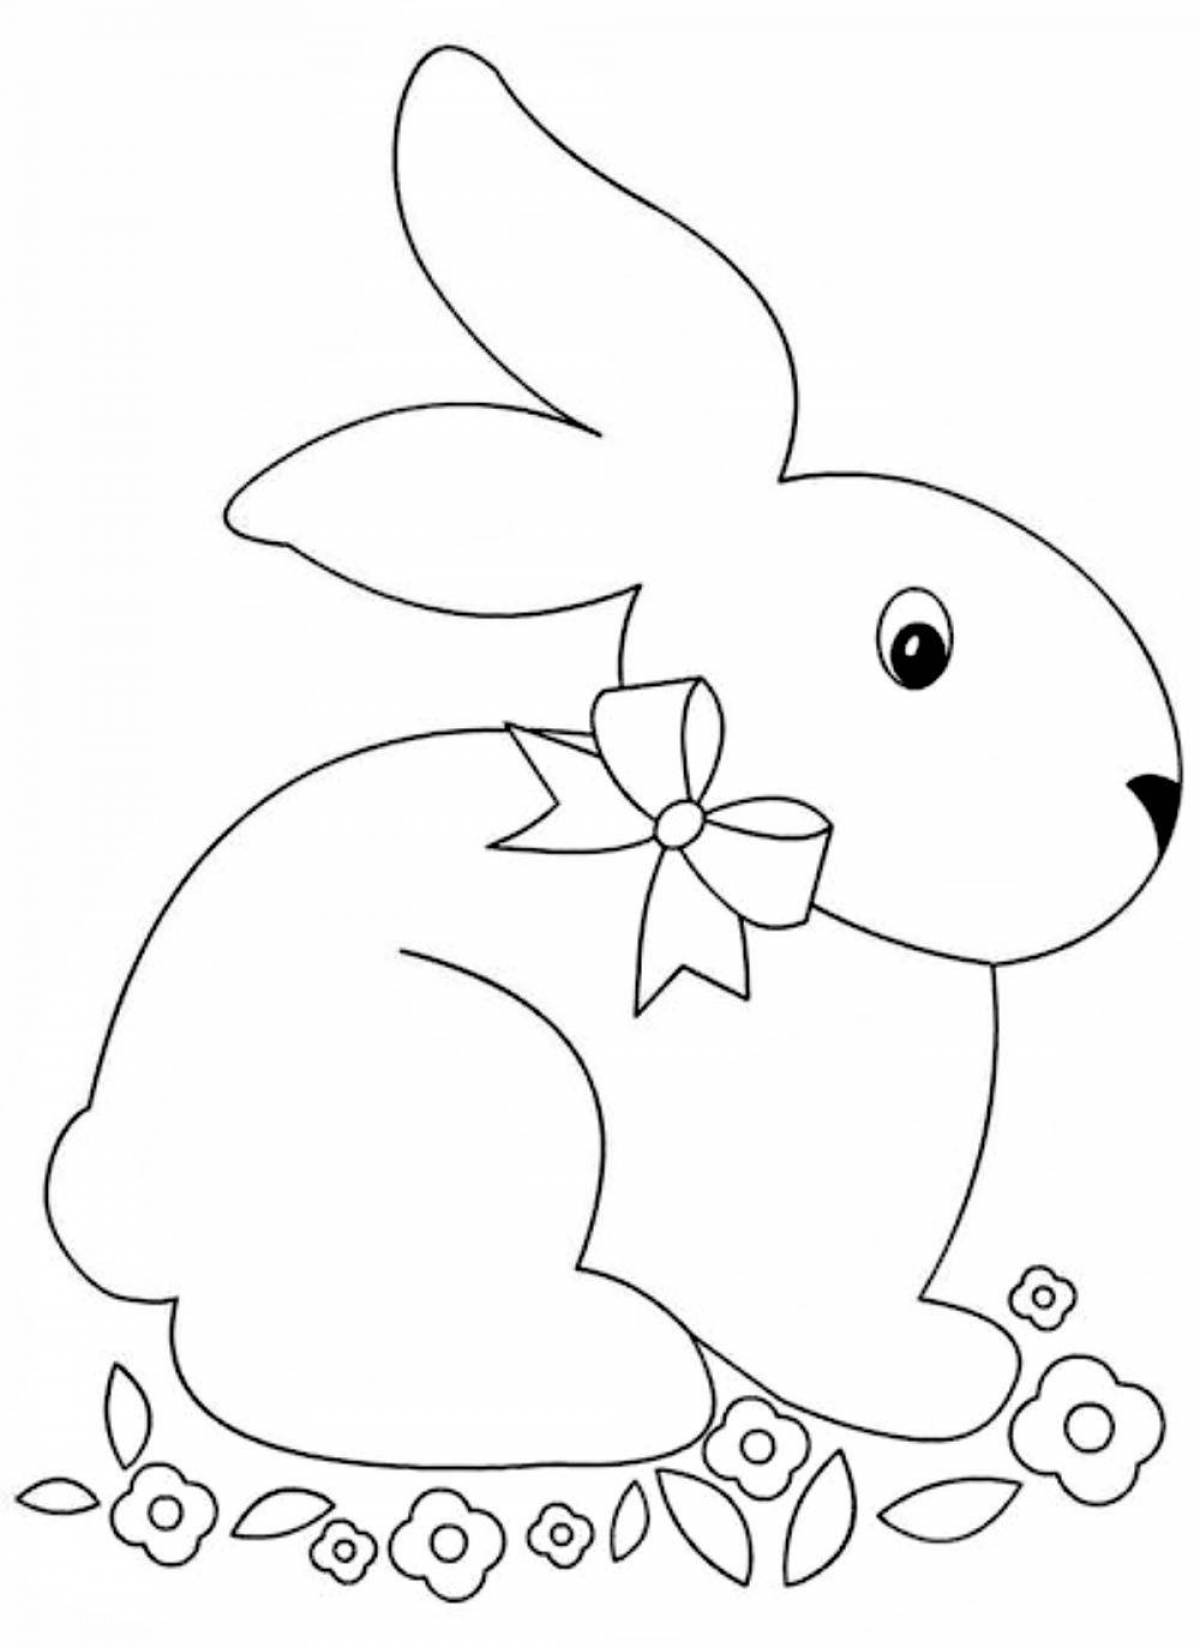 Радостный шаблон раскраски страницы кролика